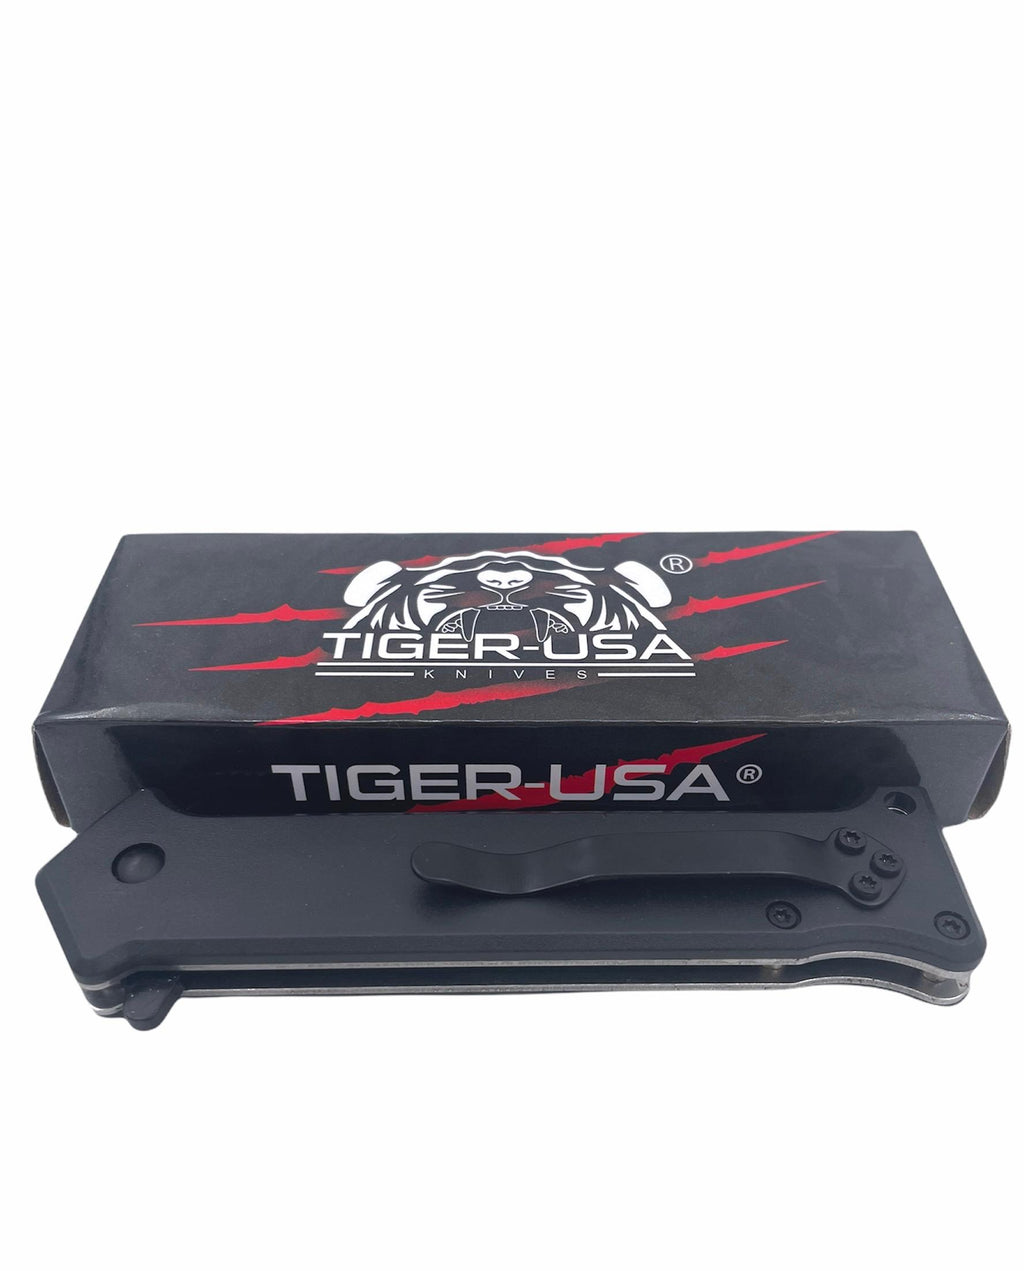 Tiger-USA Spring Assisted Knife - WINTER DEER